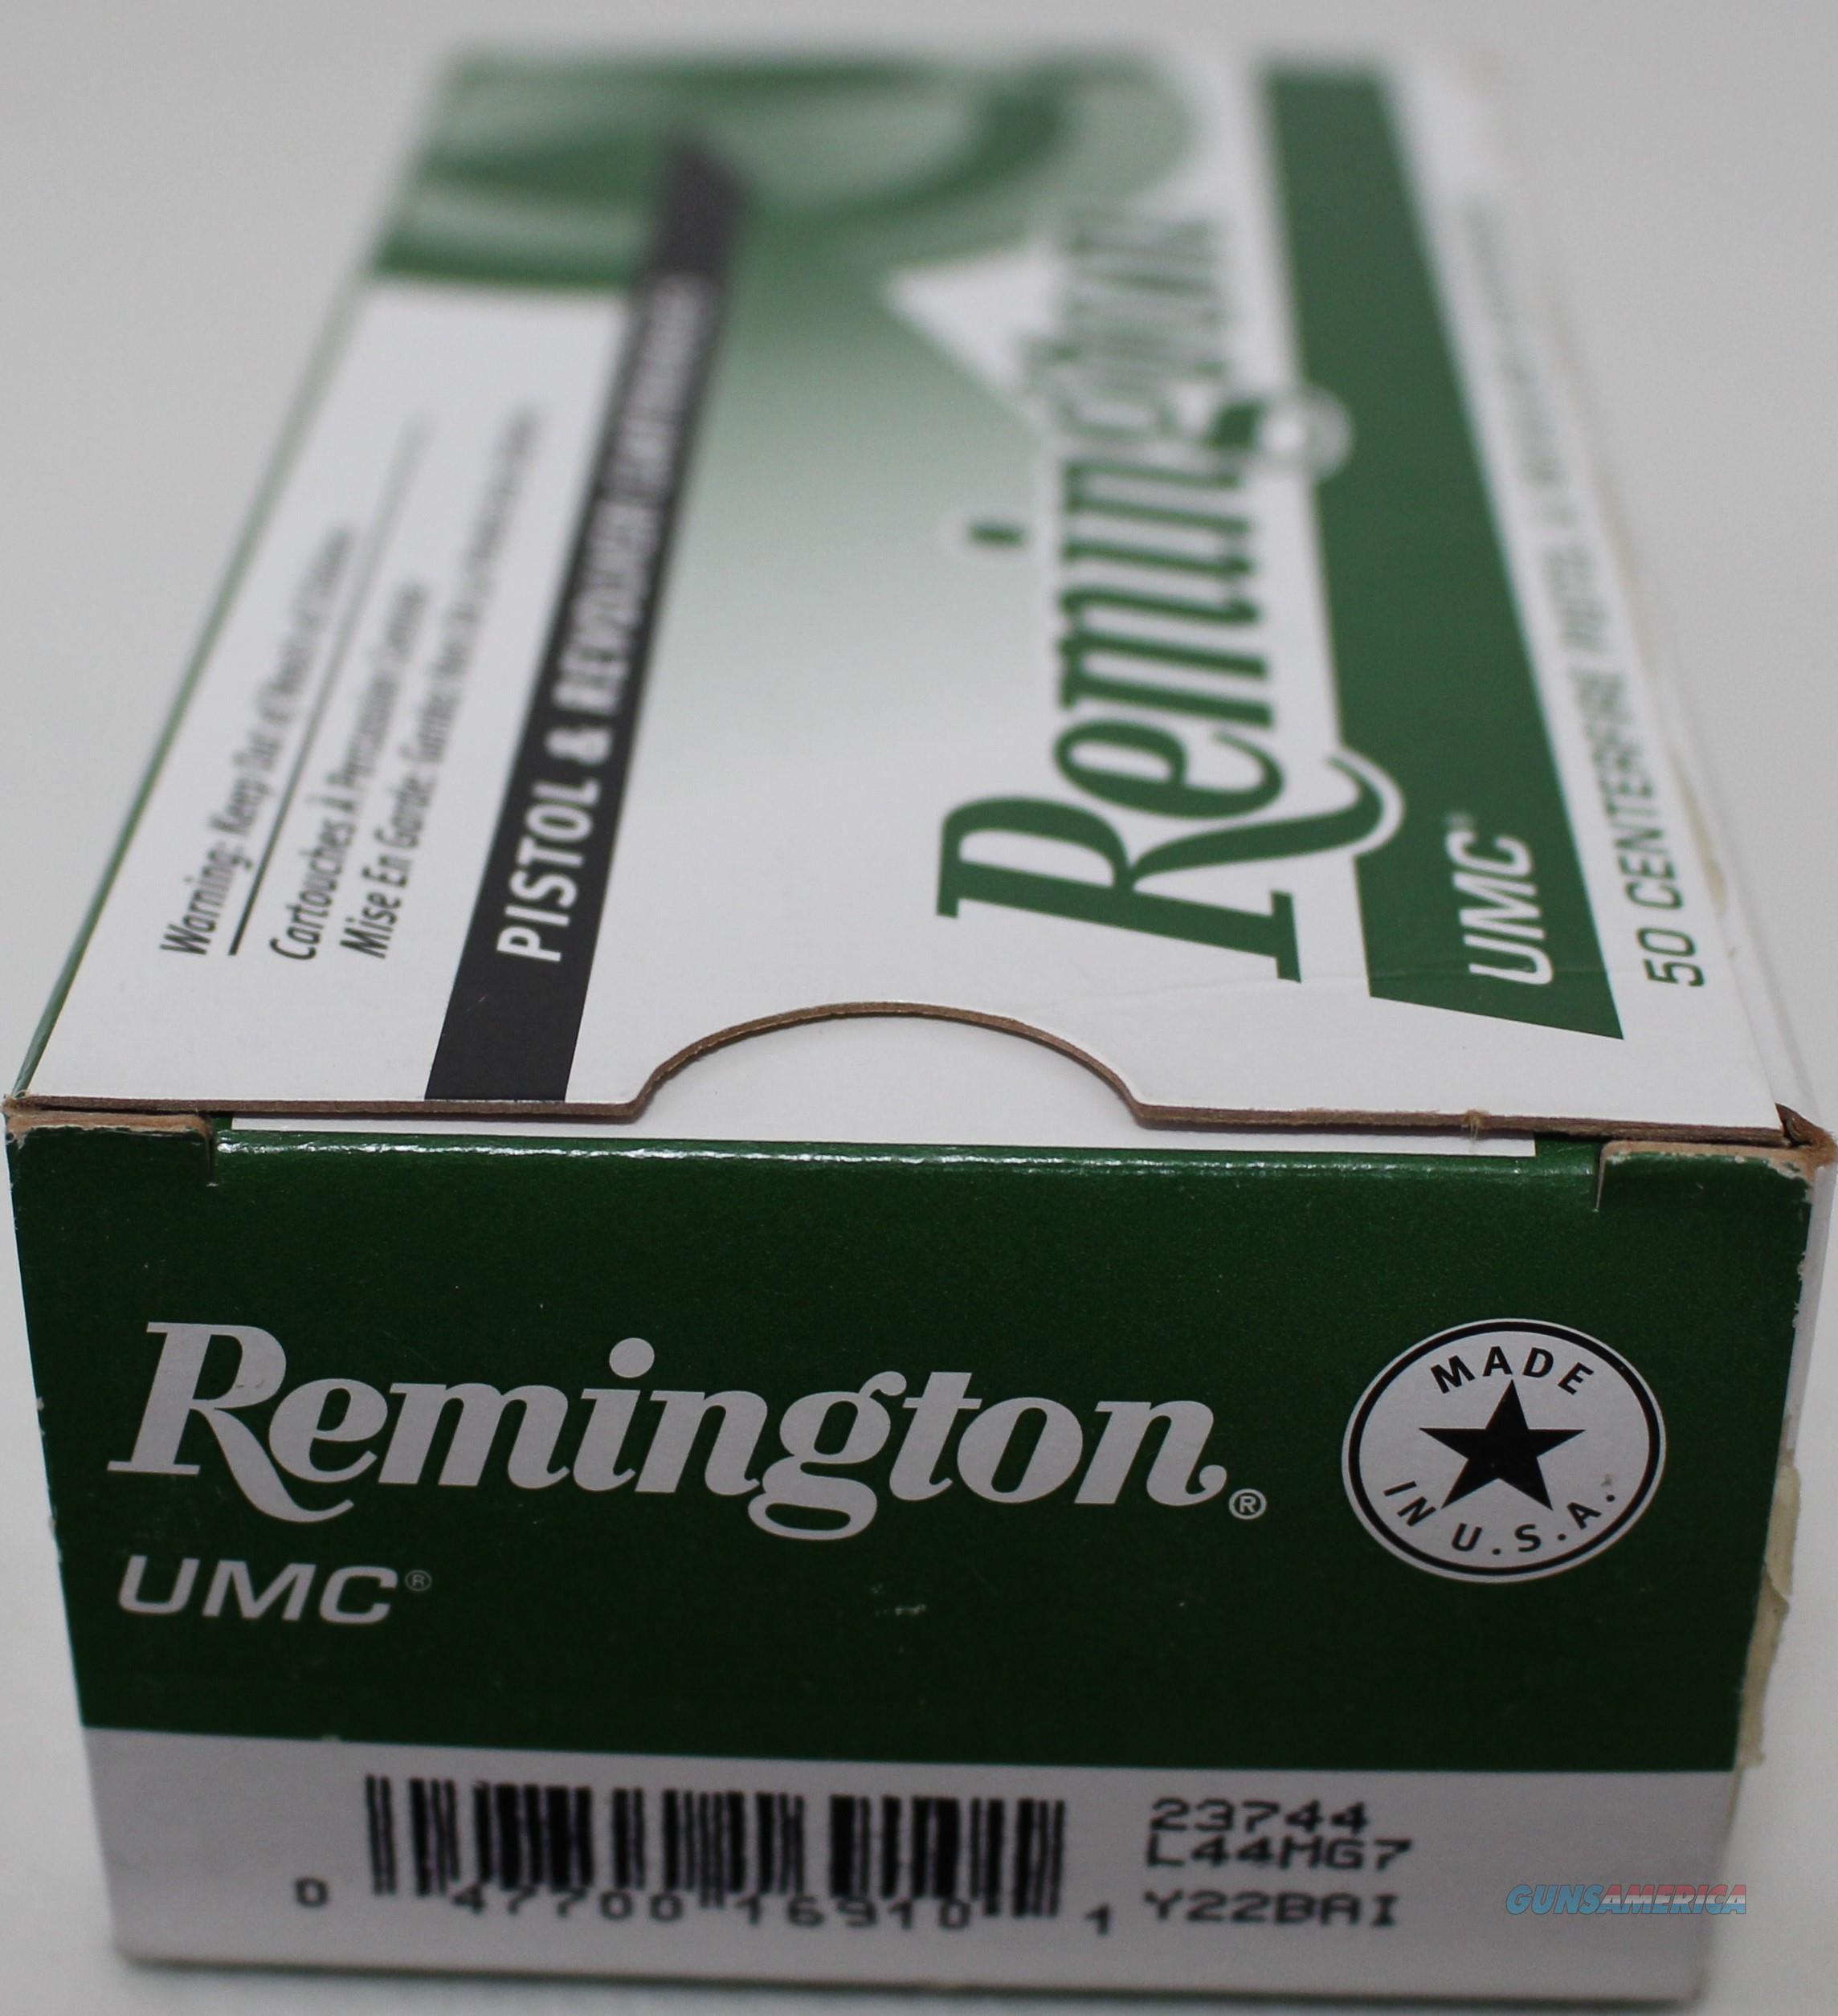 44 Rem Mag Ammo Remington for sale at Gunsamerica.com: 997023210